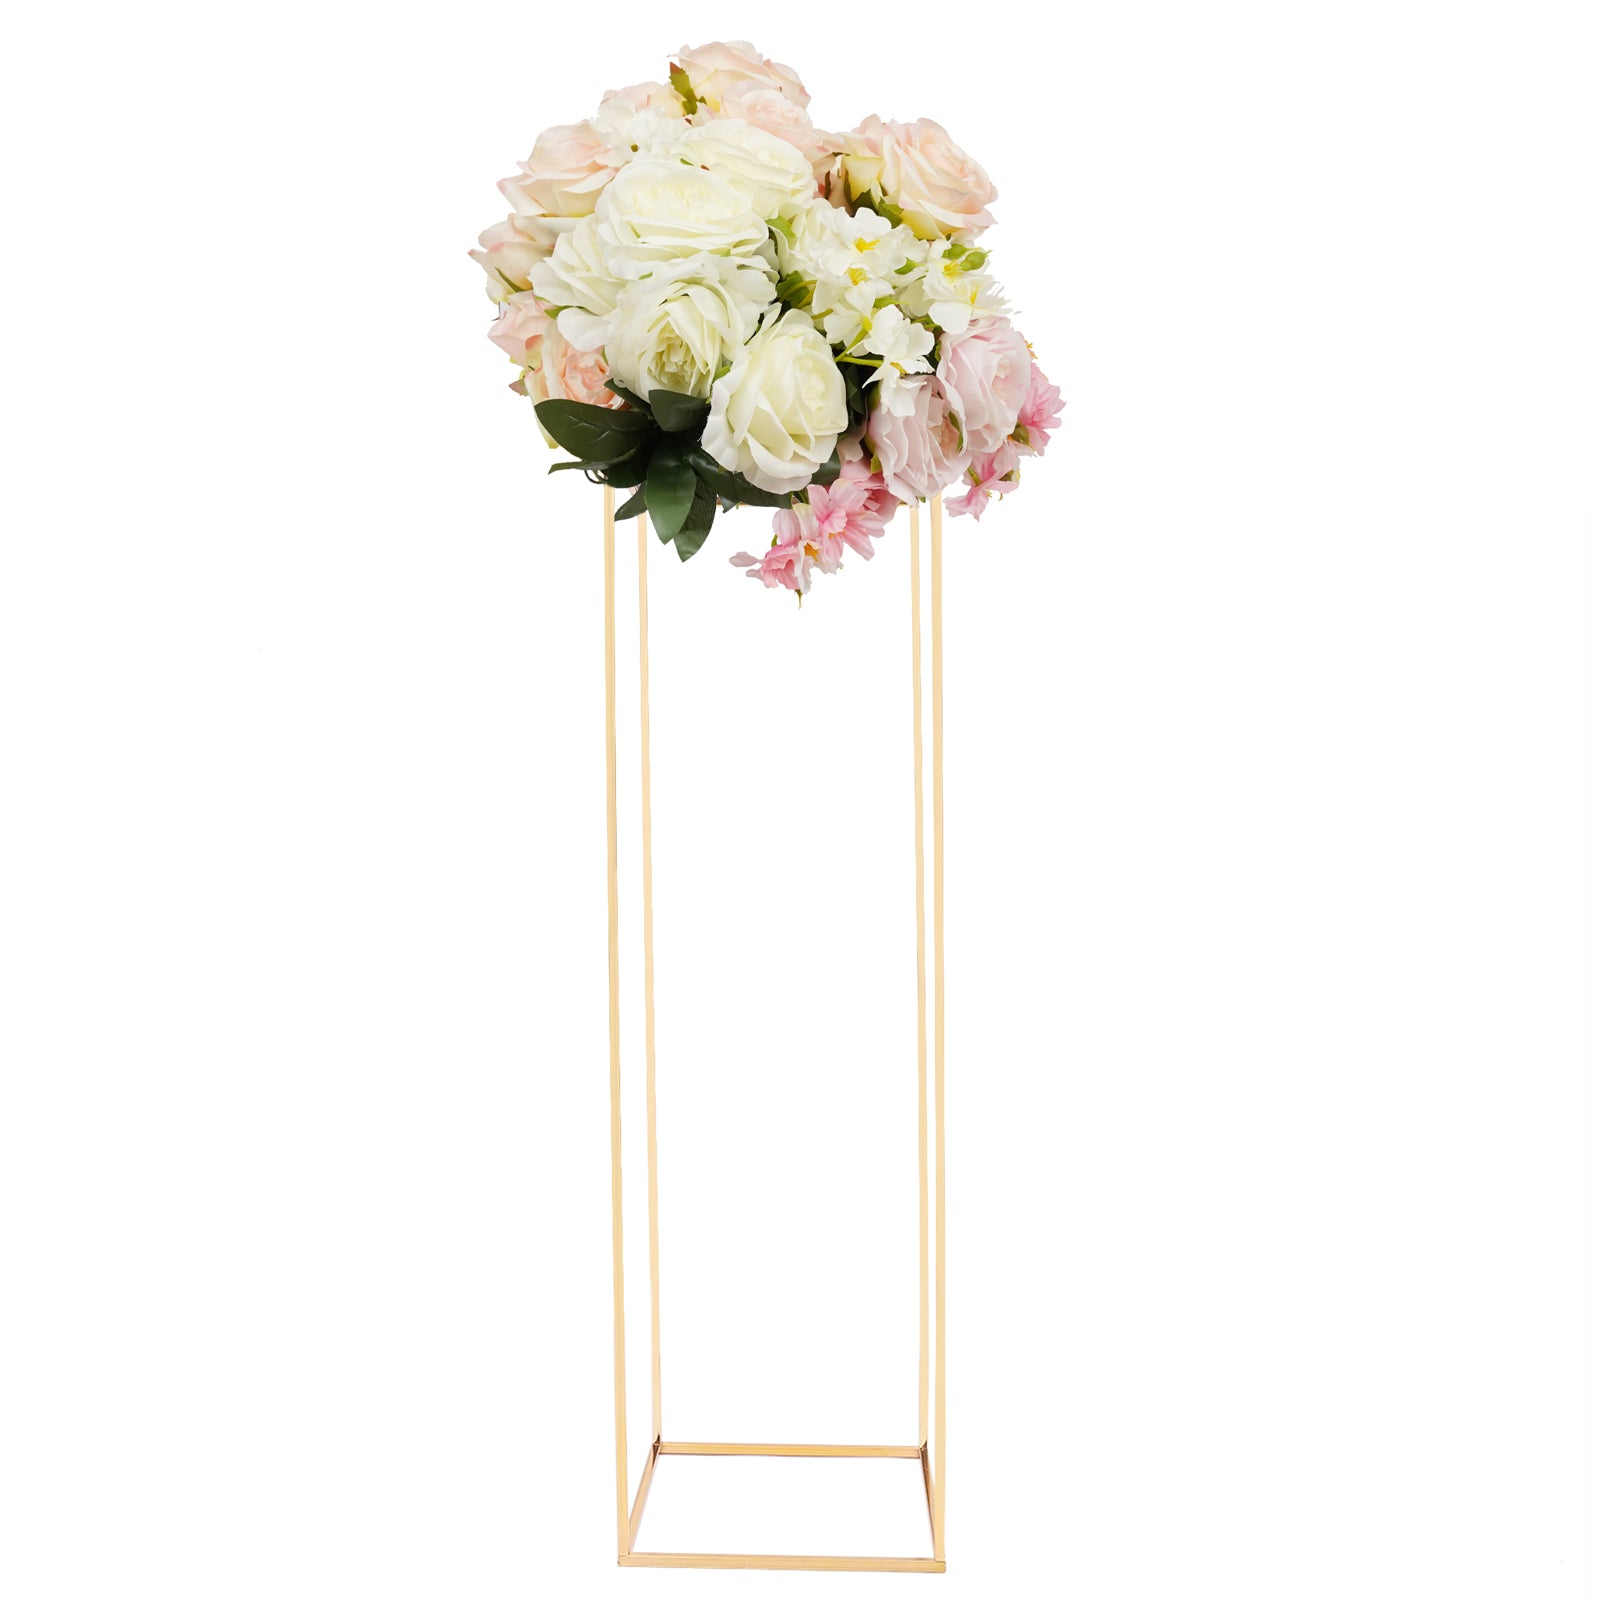 Supporto per fiori dorato, in metallo, decorazione per la casa, feste, matrimoni, decorazione con fiori rettangolari (29 x 29 x 100 cm)